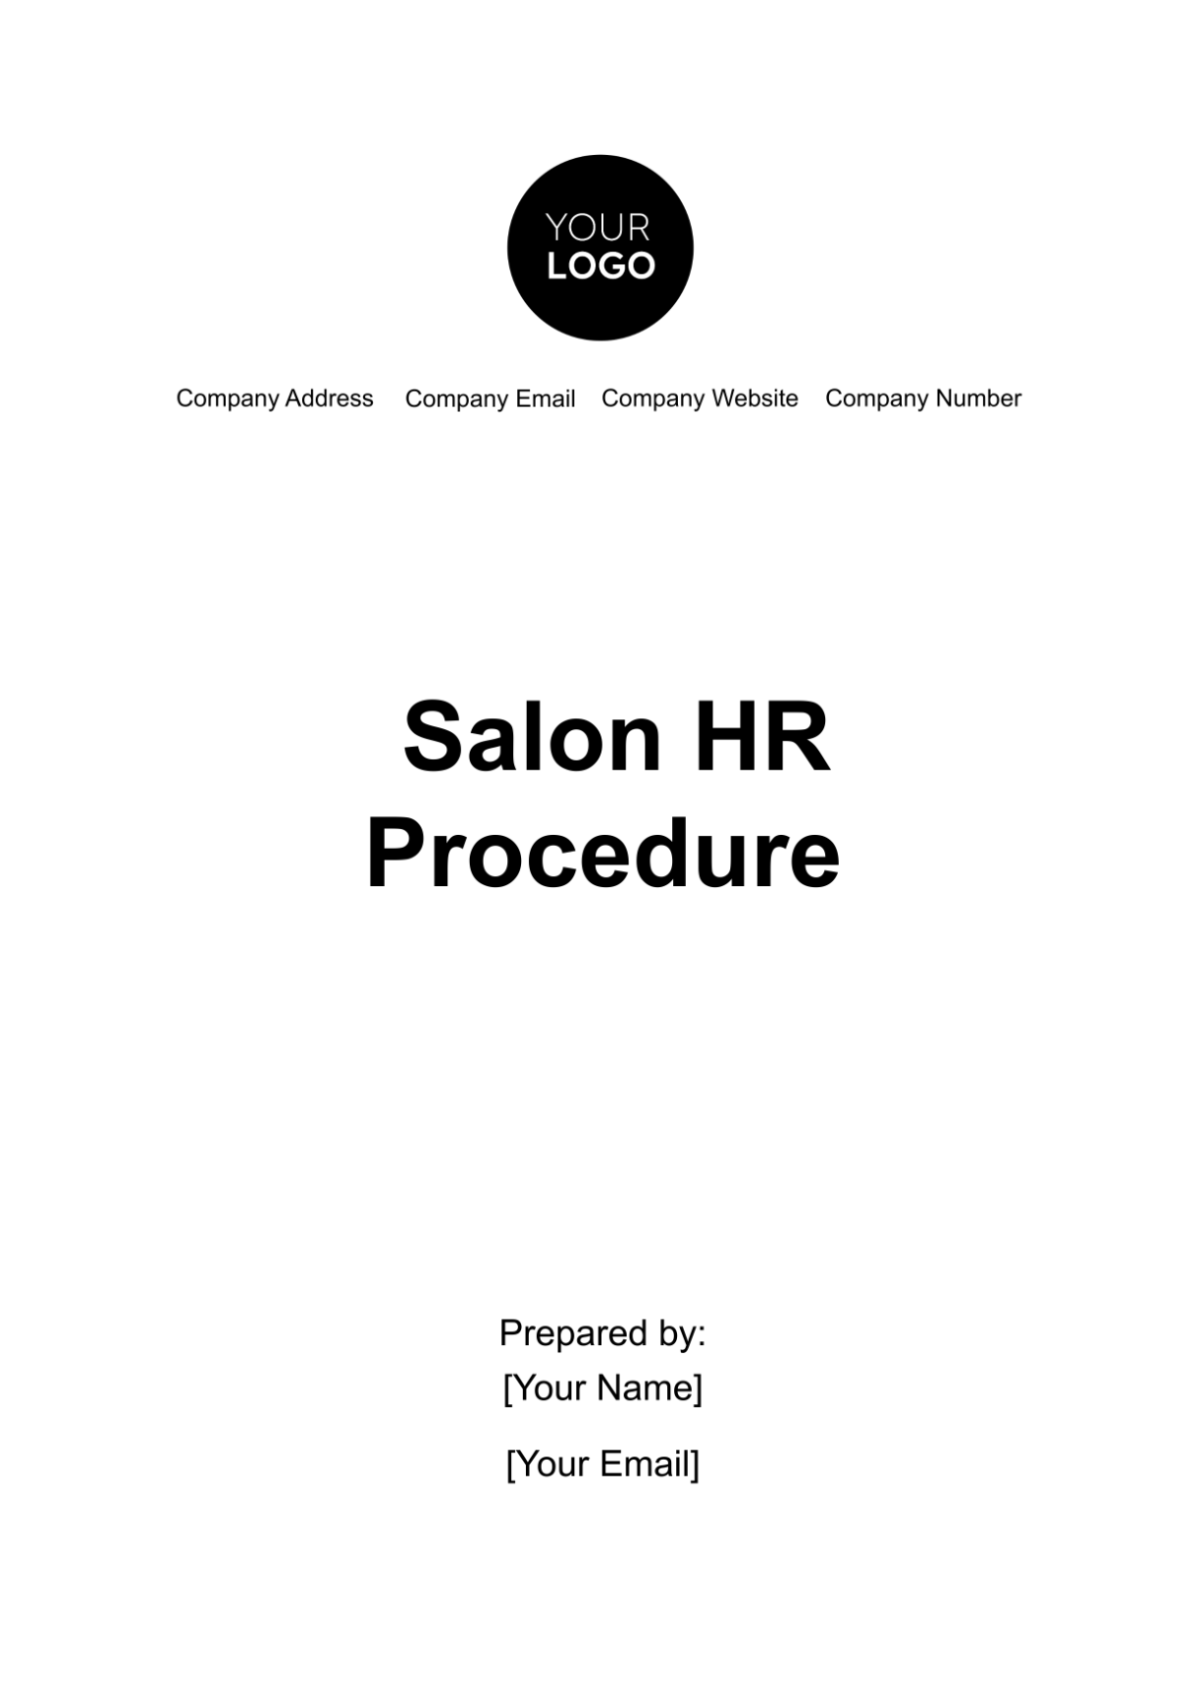 Salon HR Procedure Template